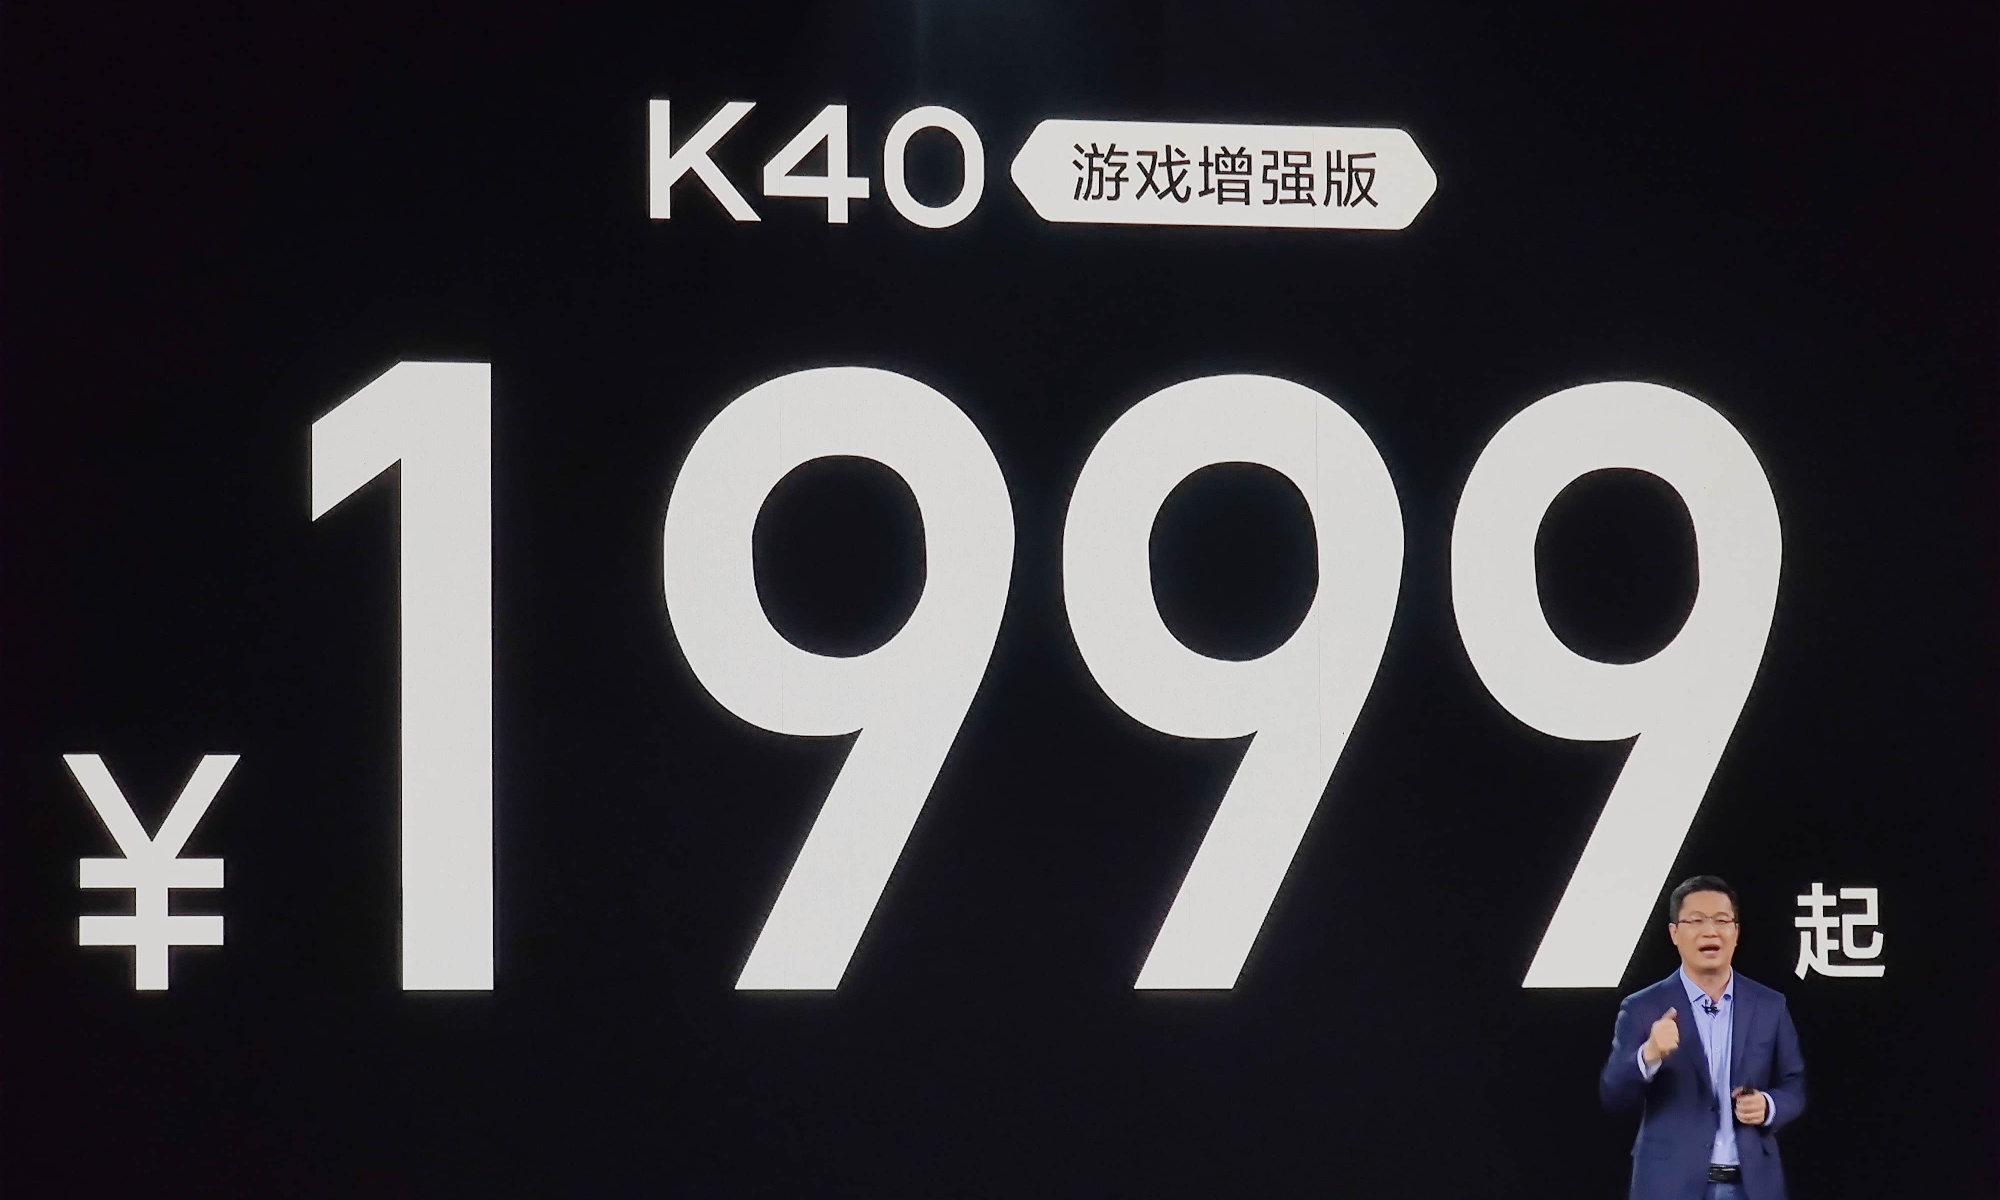 红米k40游戏增强版发布:1999元真的绝了